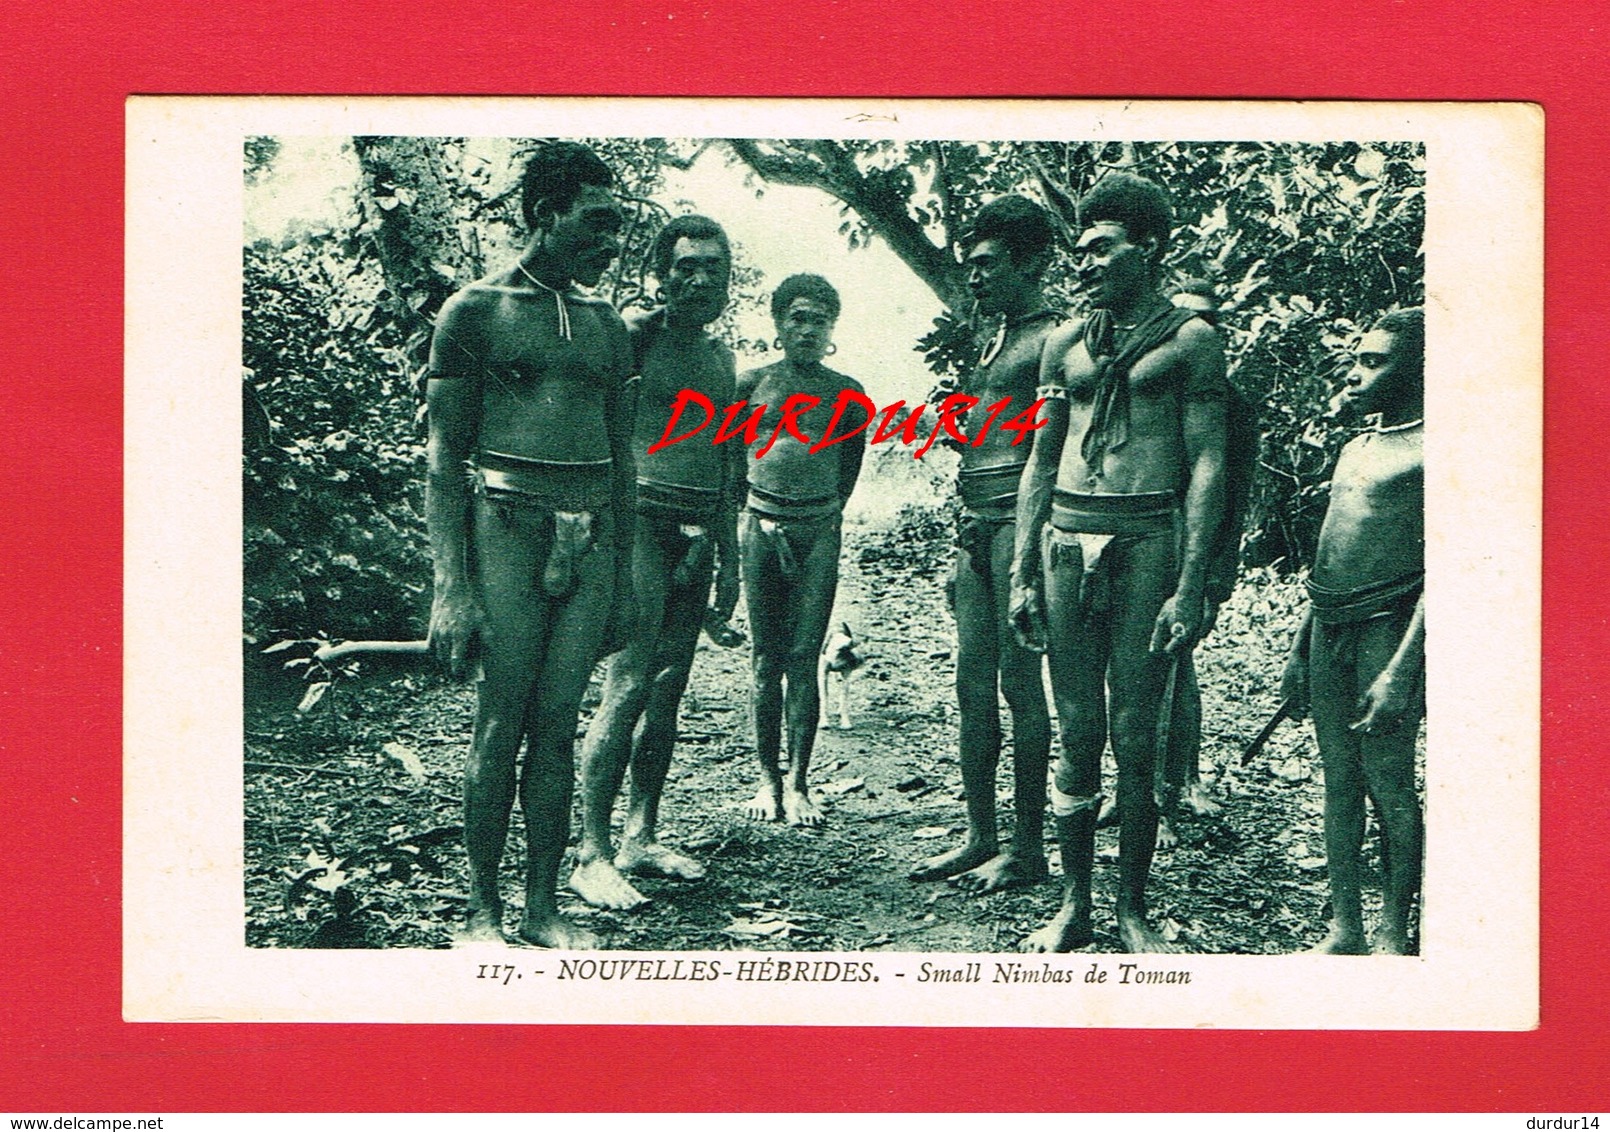 NOUVELLES HEBRIDES Small Nimbas De Toman - Vanuatu